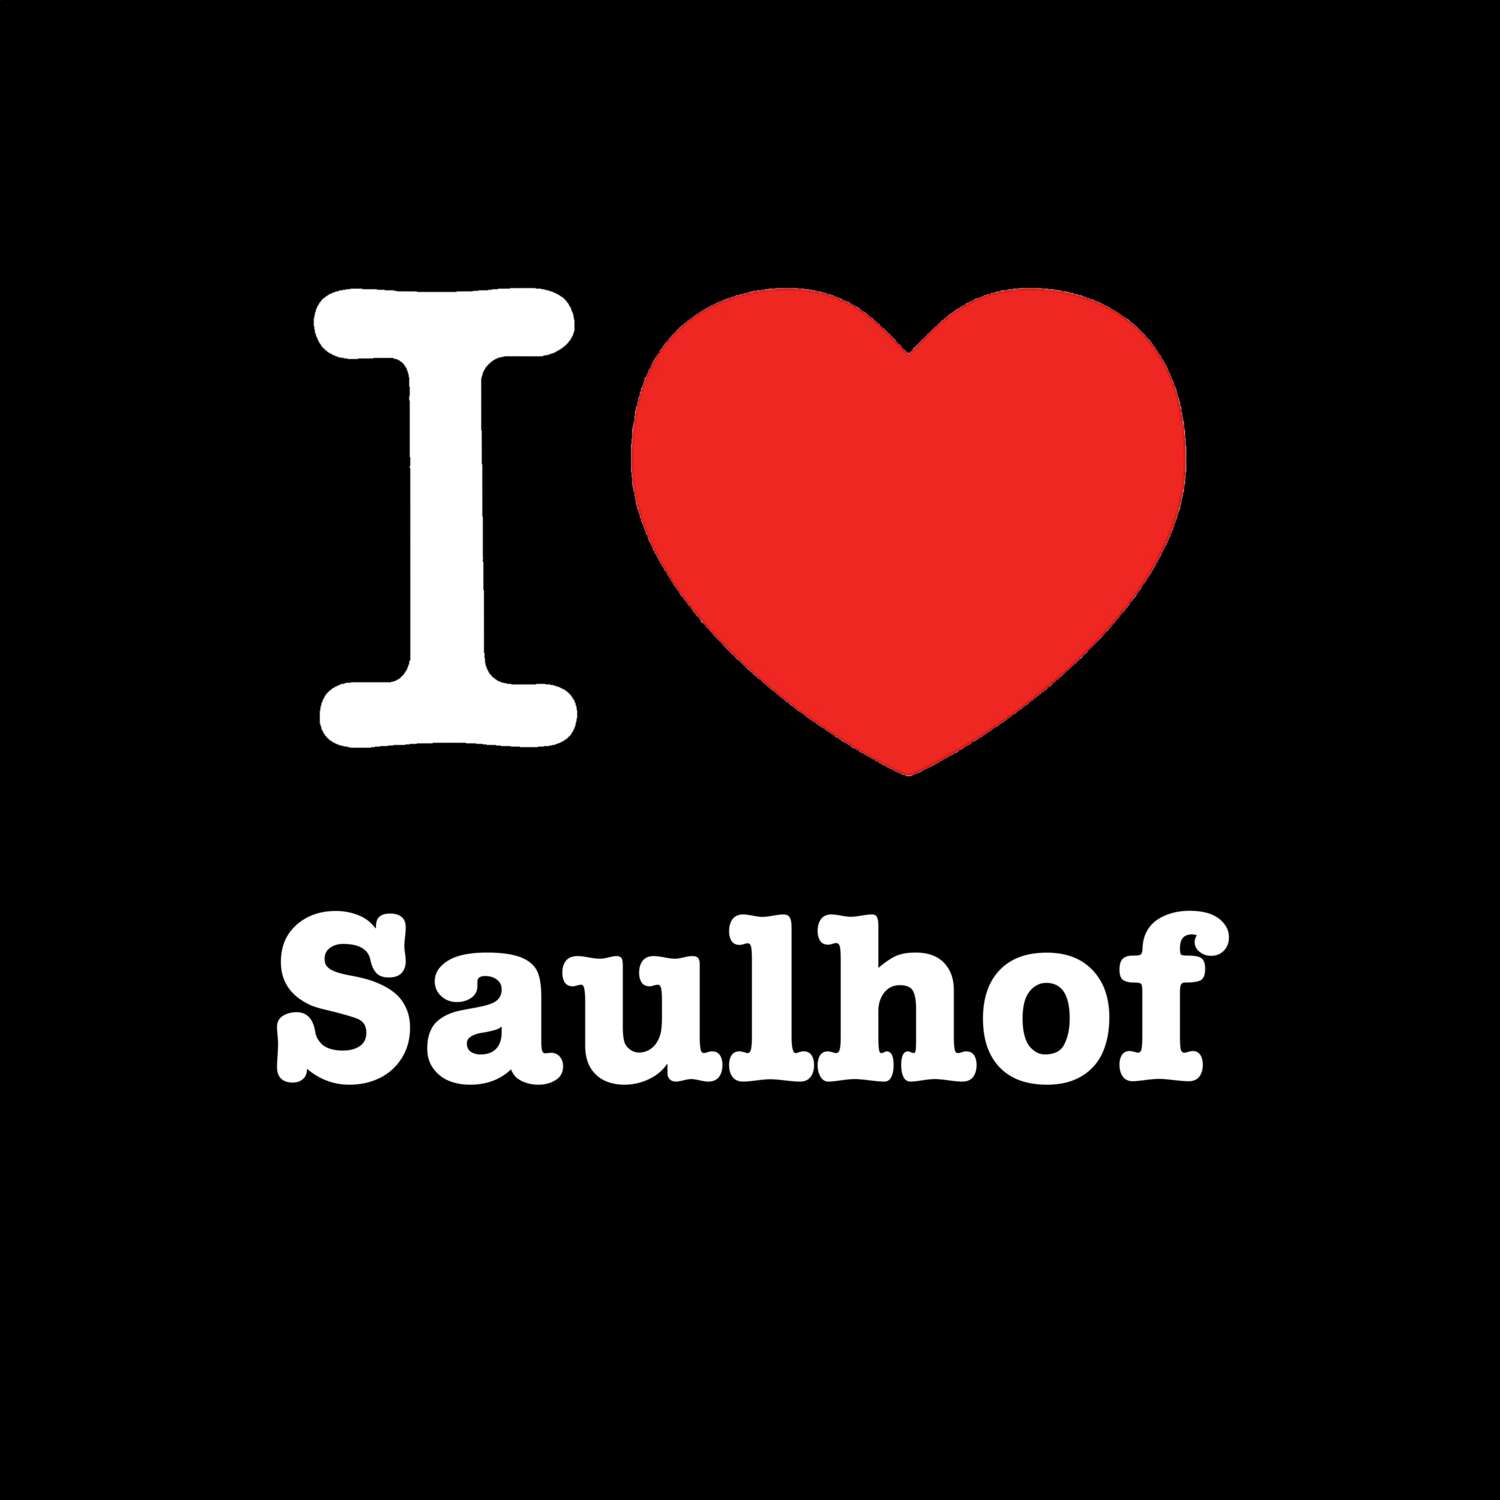 Saulhof T-Shirt »I love«